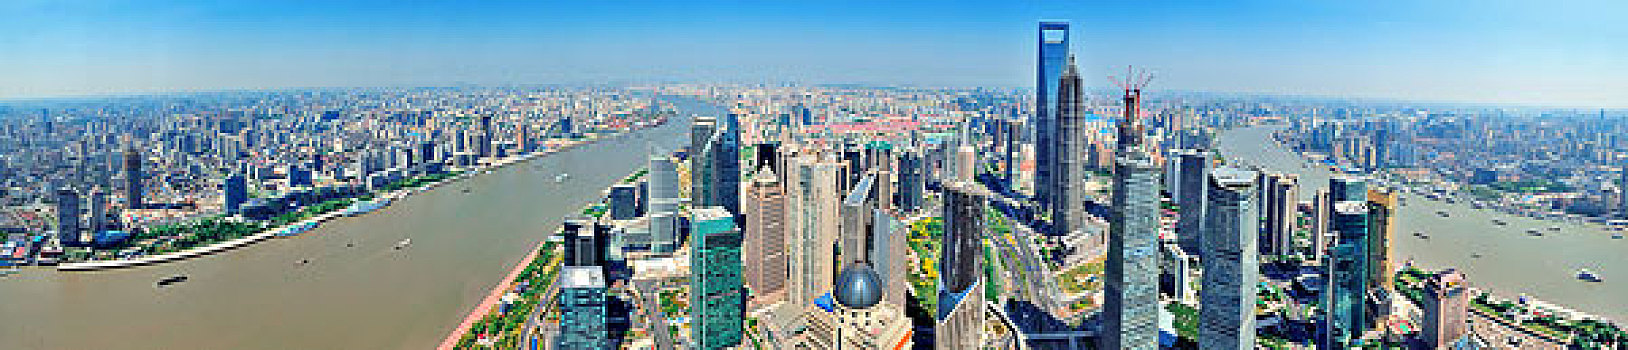 上海,俯视,全景